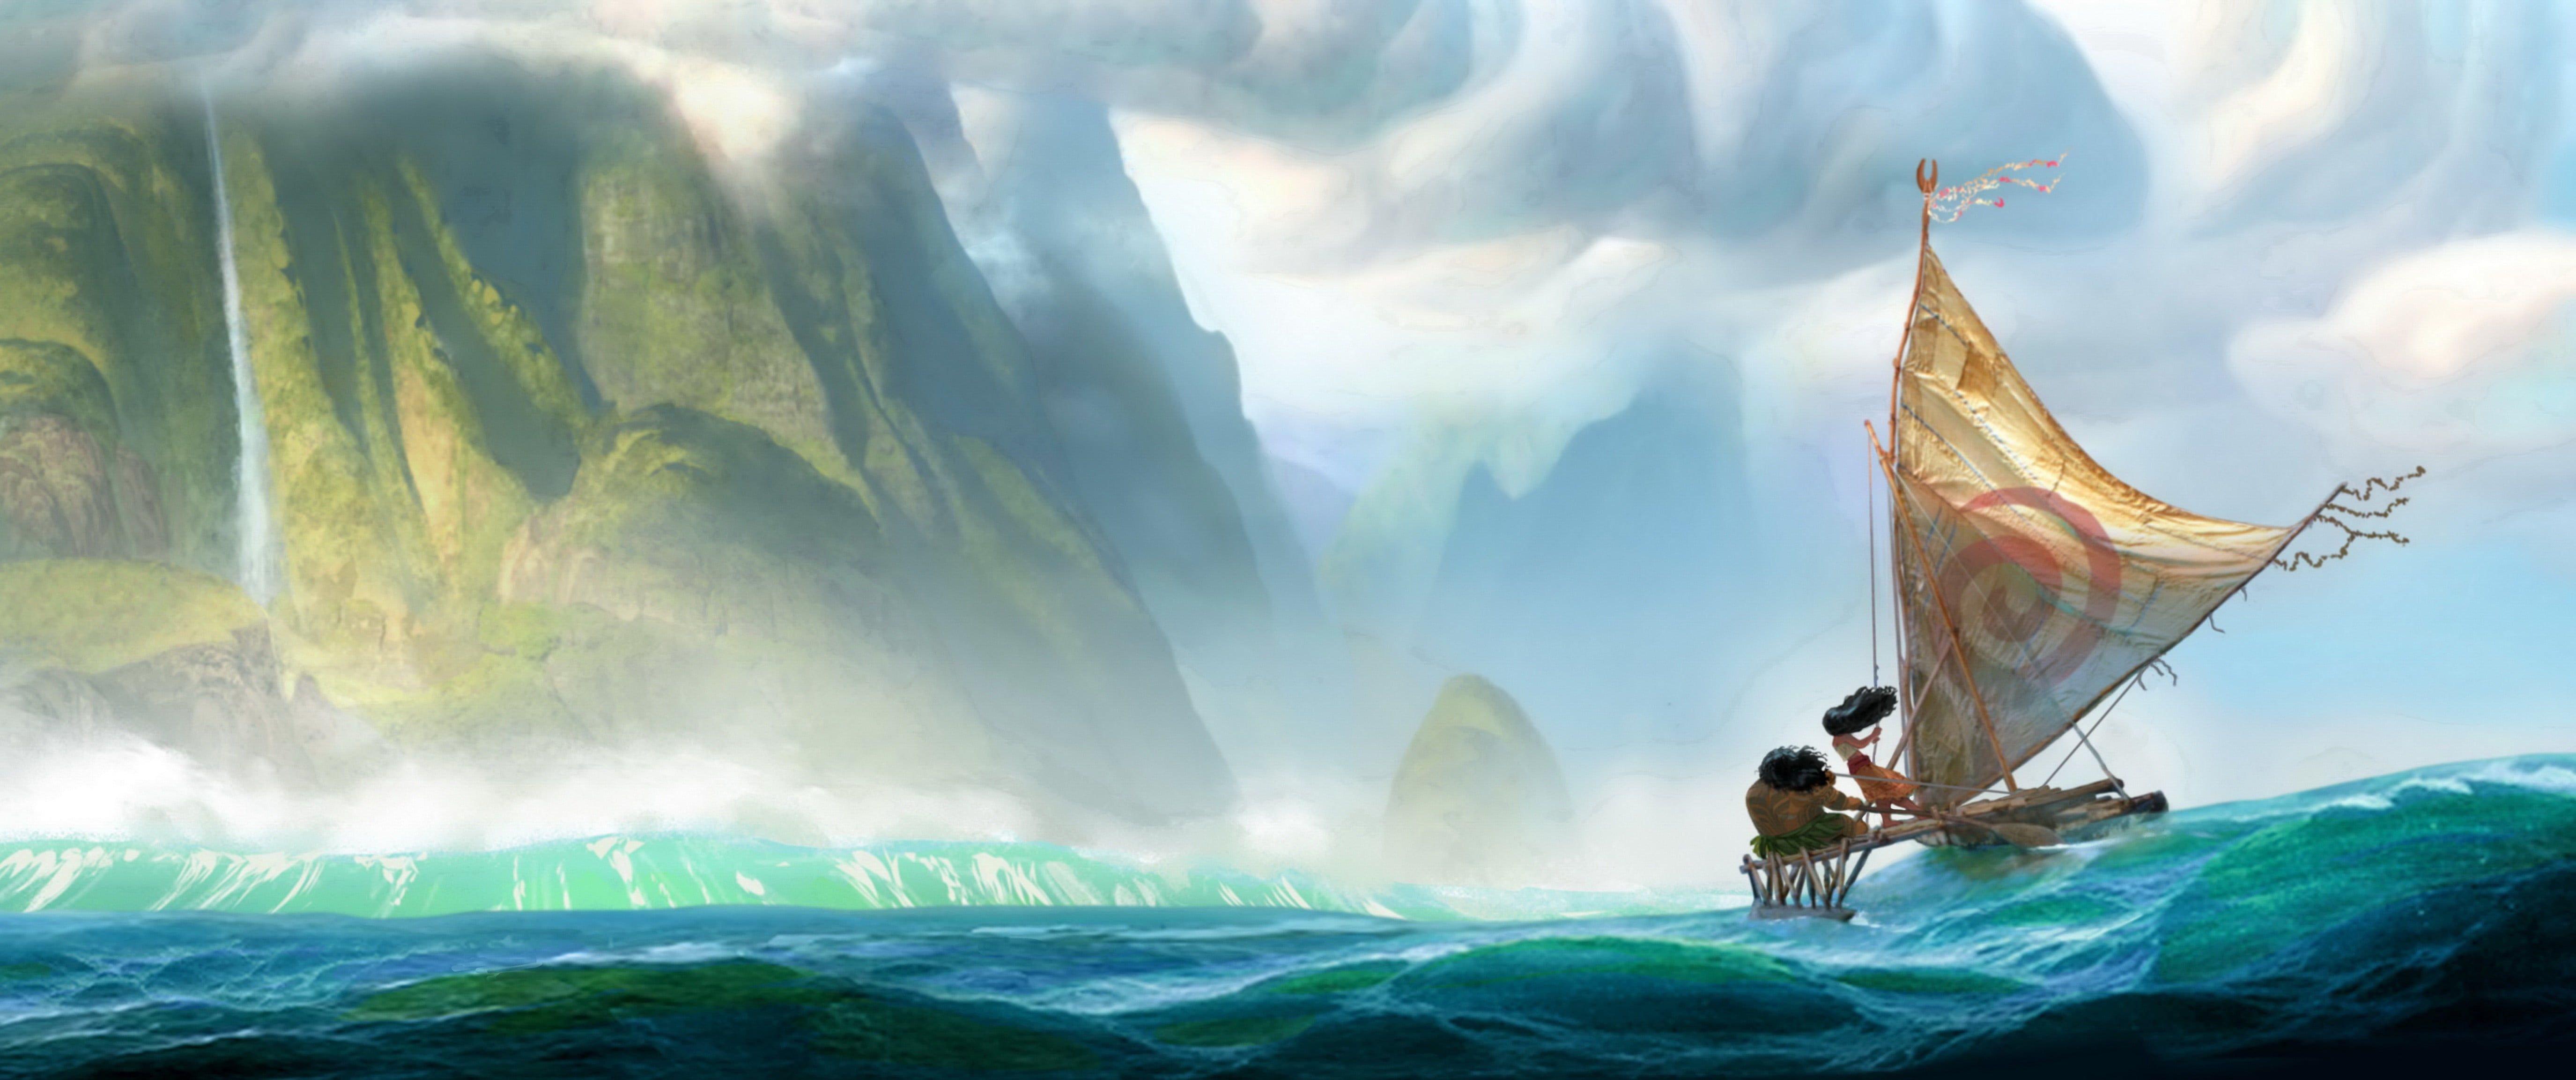 Disney Moana digital wallpaper, Moana, landscape, sea, boat HD wallpaper